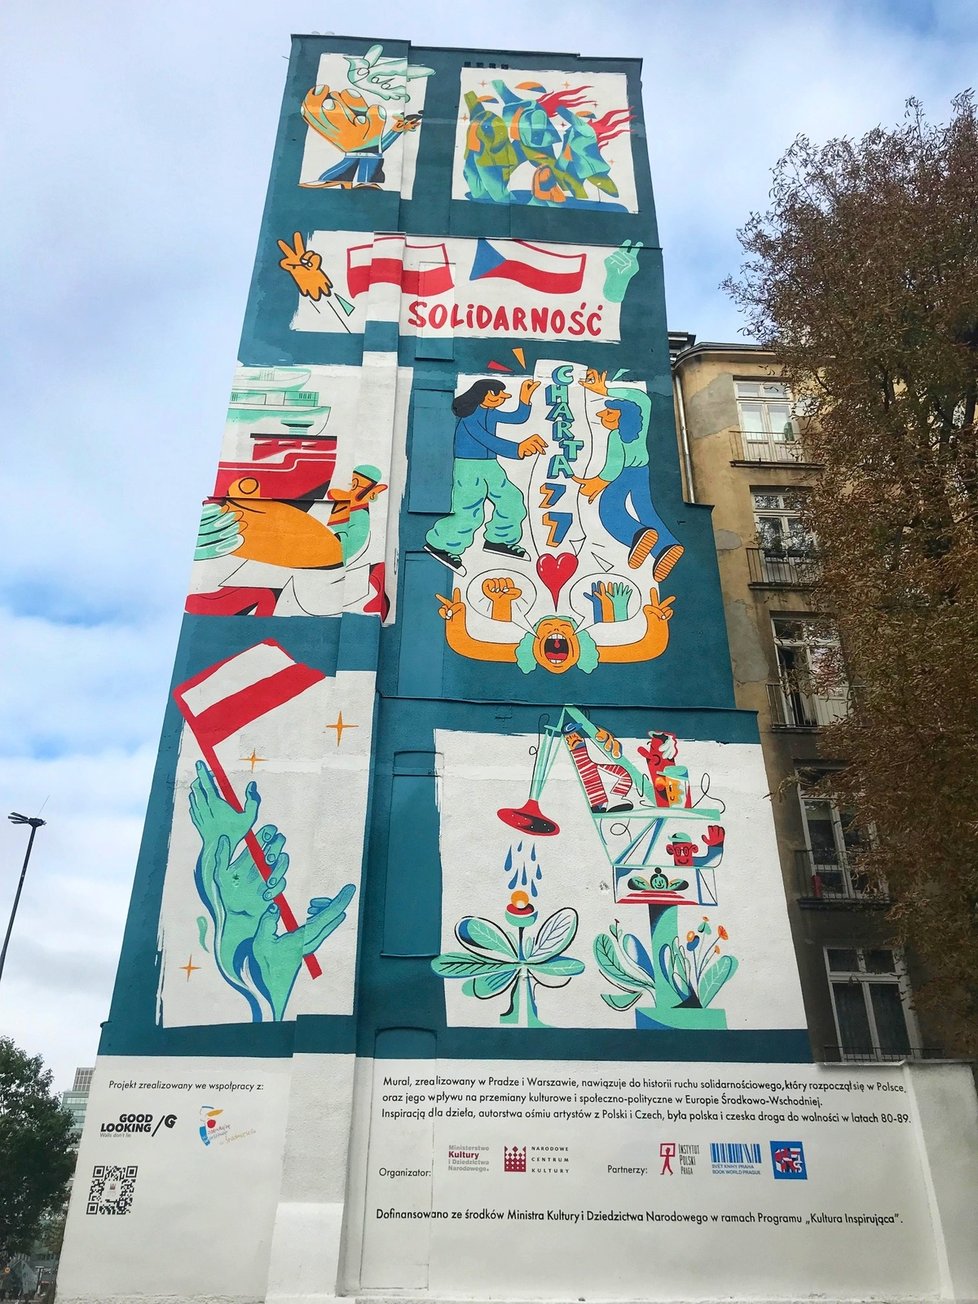 Odhalení nástěnného muralu ve Varšavě při příležitosti 40. výročí vzniku polského hnutí Solidarita. Umělecké dílo vzniklo jako společný projekt osmi českých a polských umělců. Výsledkem jsou dva nástěnné muraly, které se odhalily ve stejnou chvíli v Praze a ve Varšavě.